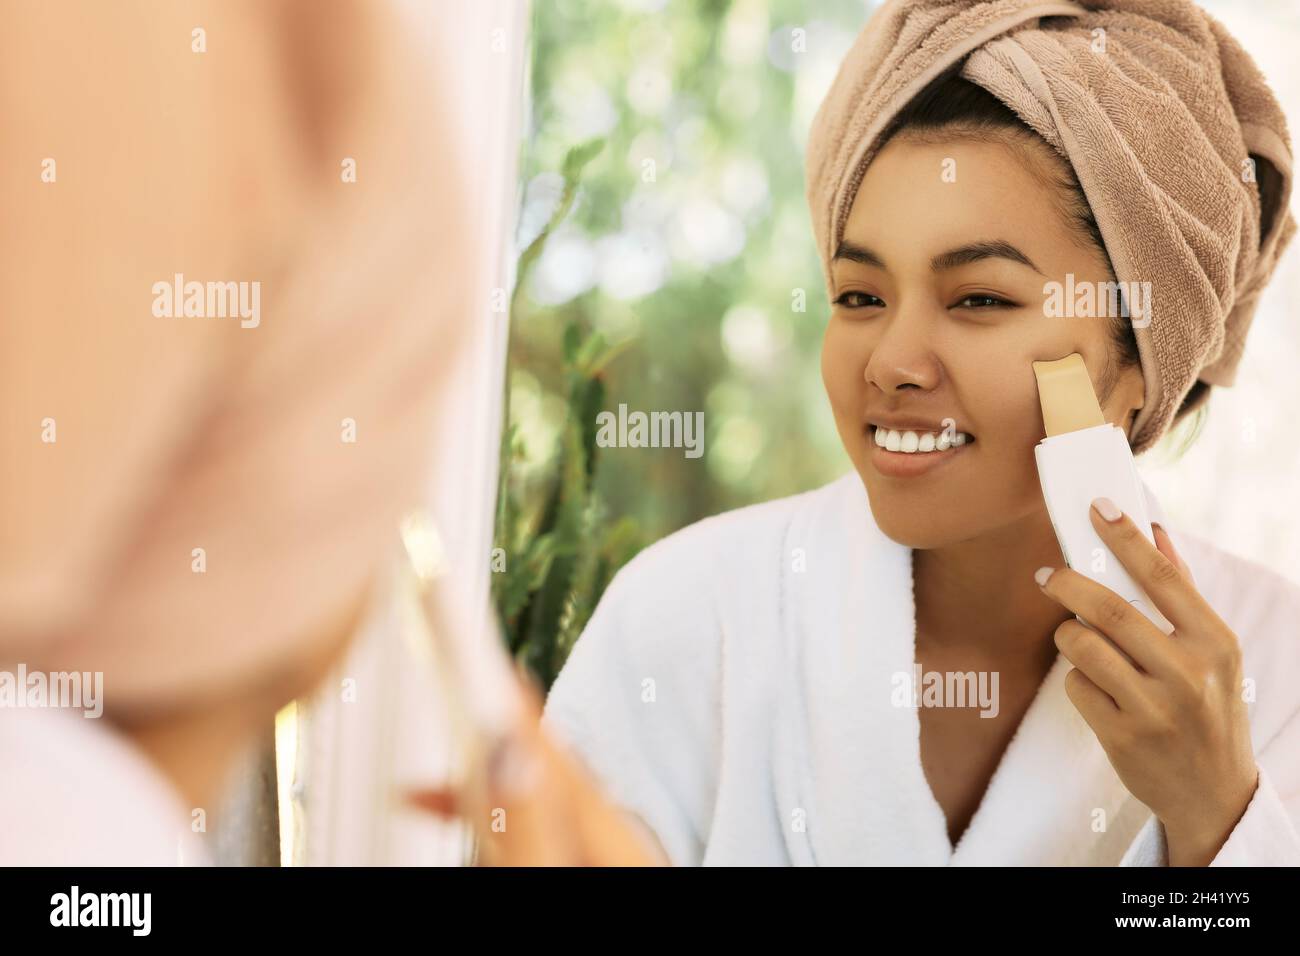 Gesichtshaut reinigen, Mitesser im Gesicht entfernen. Asiatische Frau Blick auf Reflexion im Spiegel, während Ultraschall Haut schälen Verfahren Stockfoto